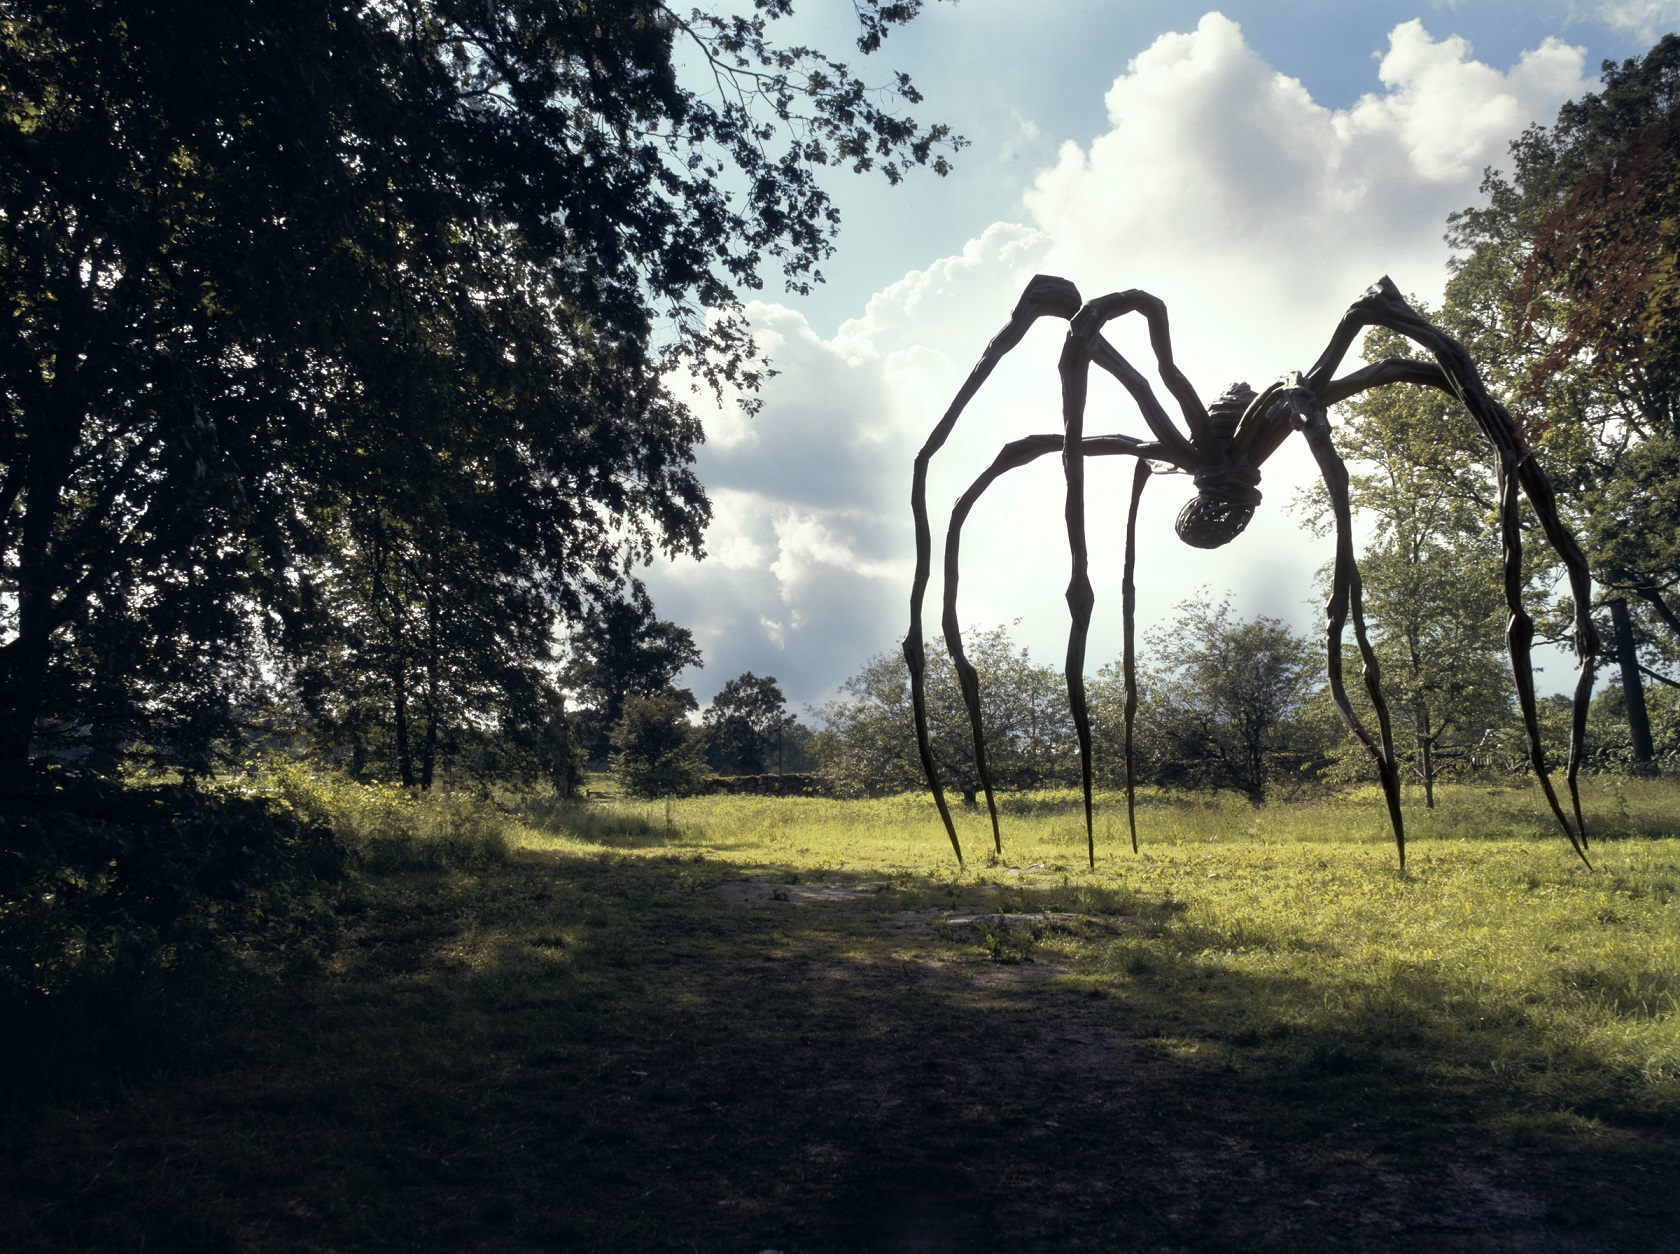 Η γιγαντιαία αράχνη της Bourgeois έρχεται για να μας “παγιδεύσει” στον ιστό της